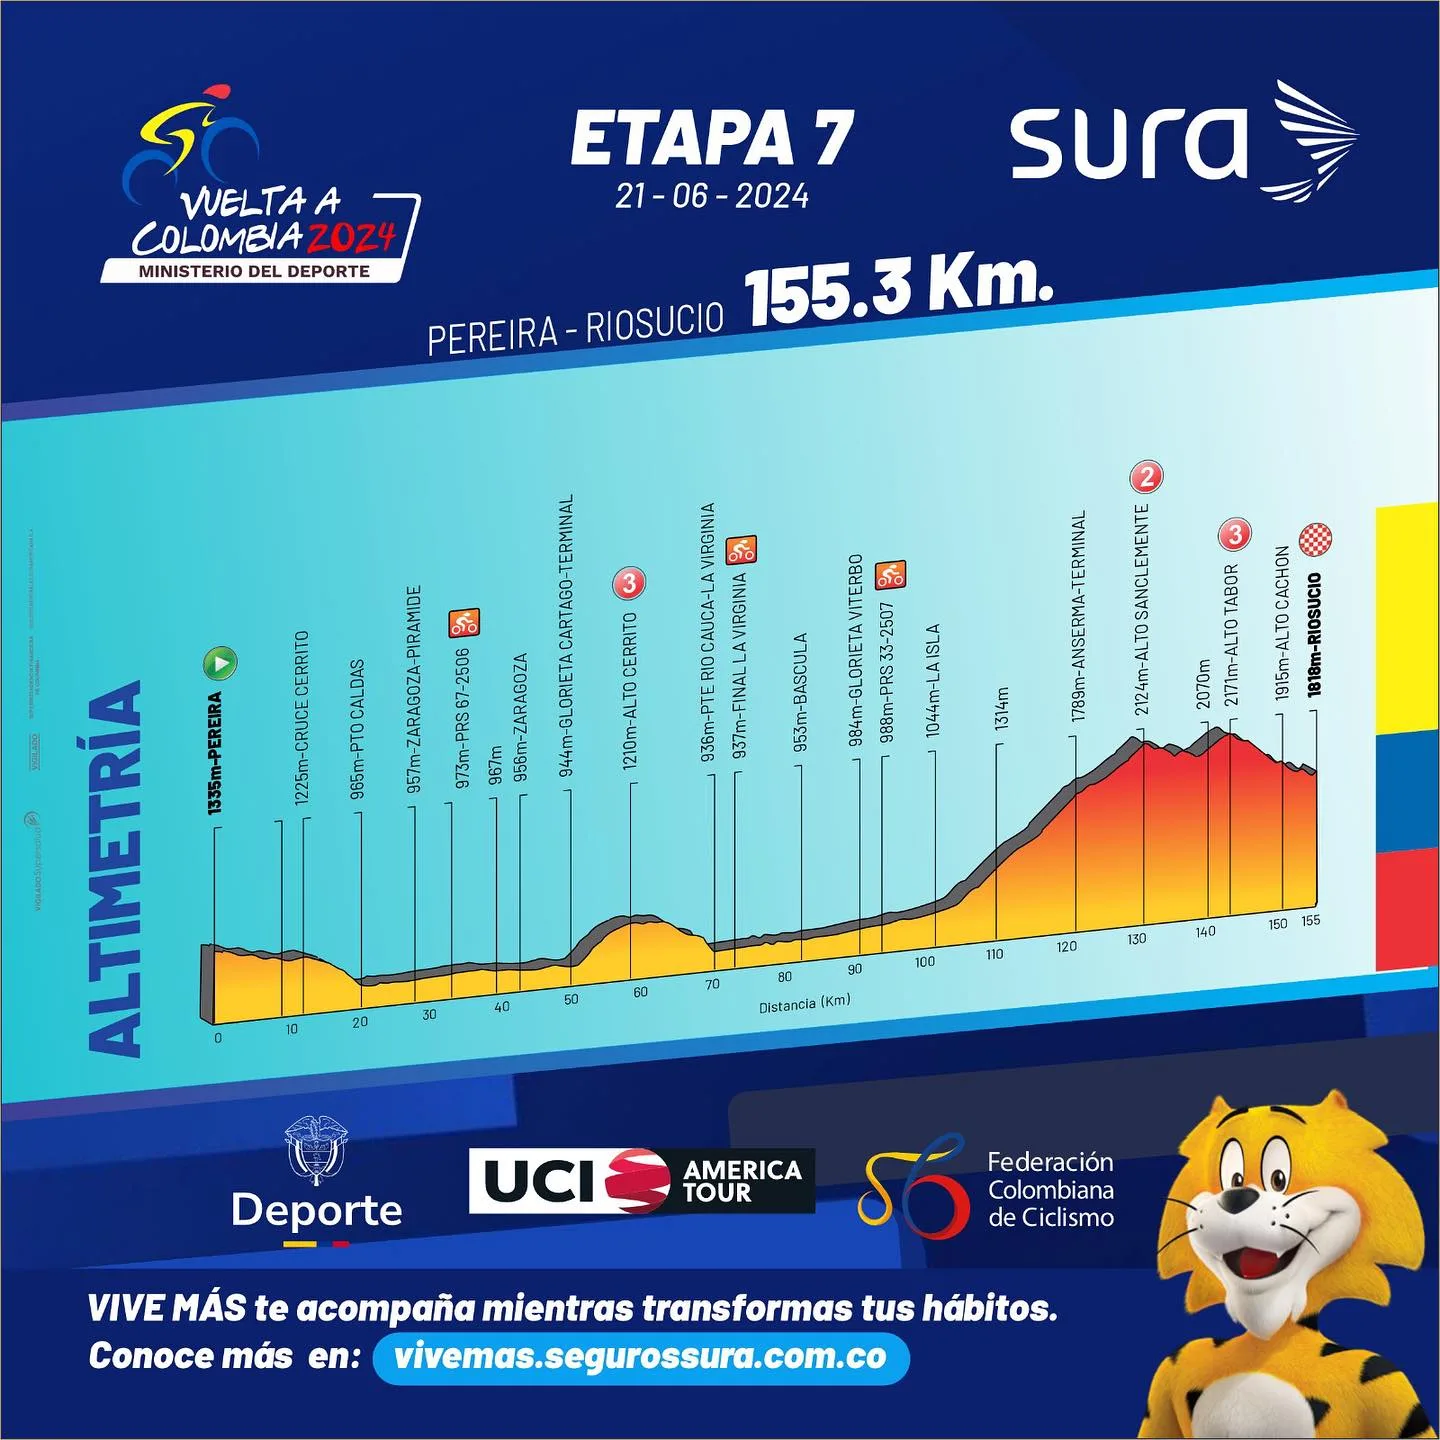 Etapa 7 Vuelta a Colombia 2024